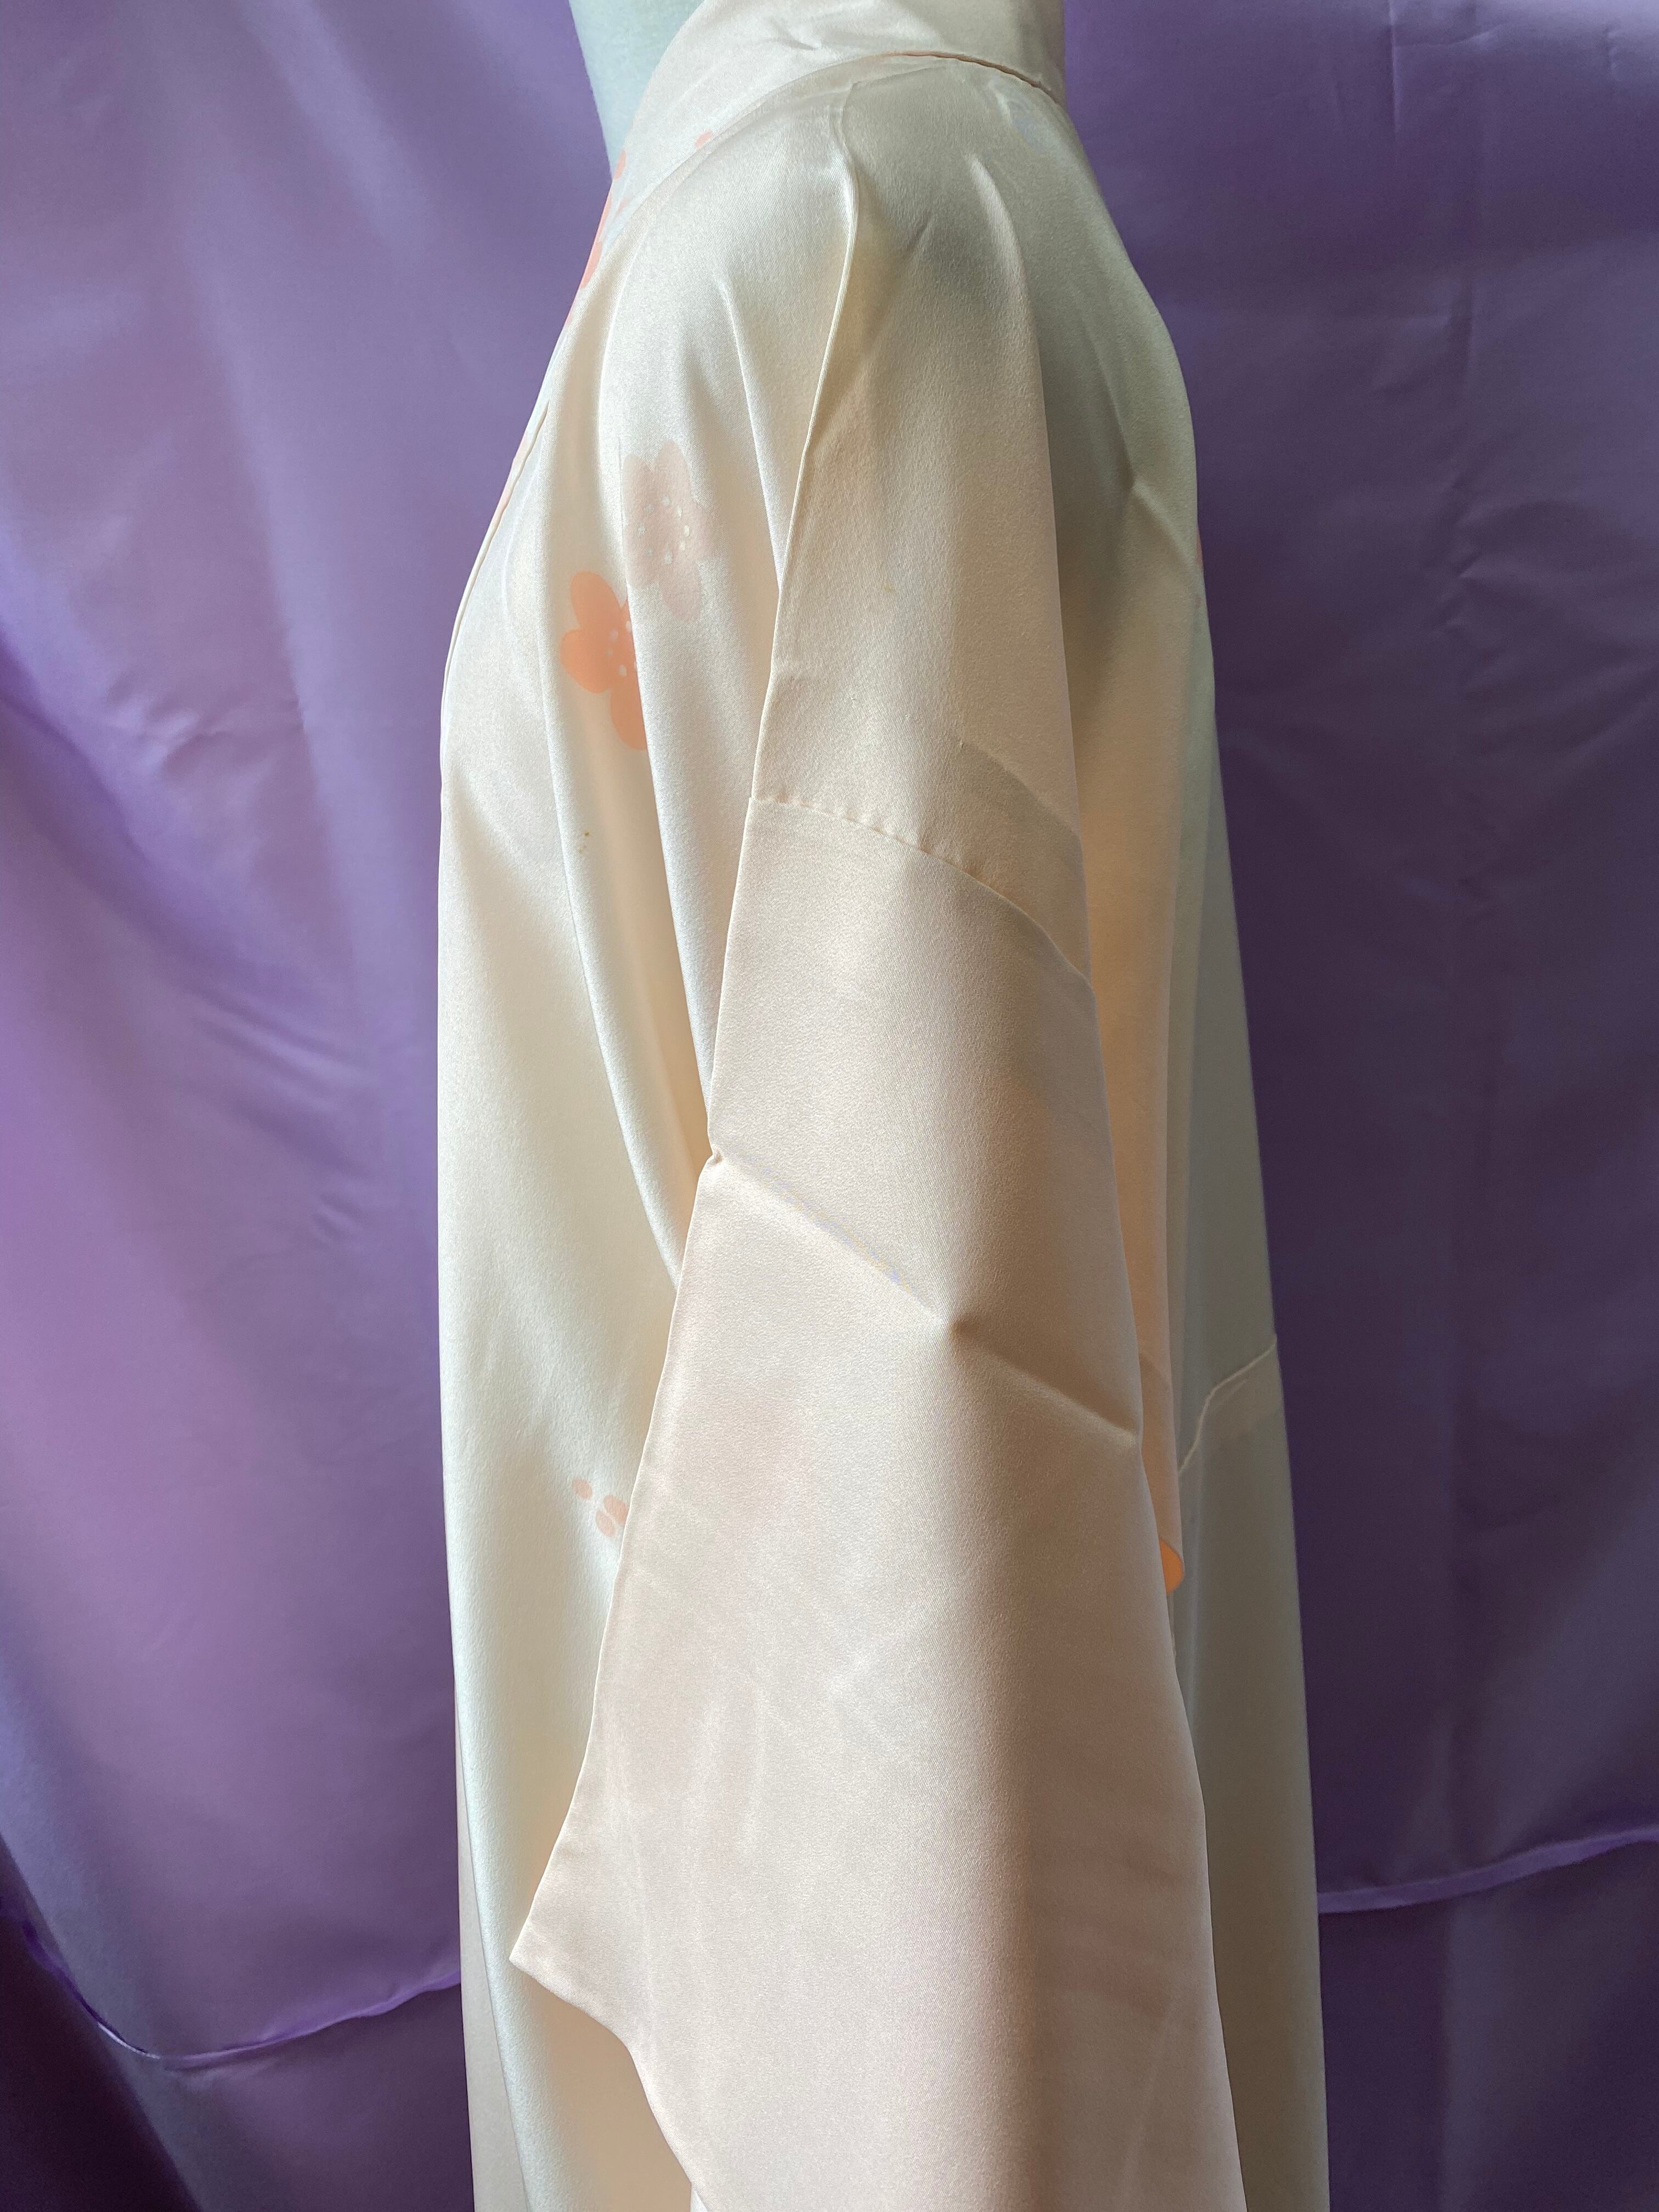 梅模様の単衣 正絹長襦袢 淡い桃色 無双袖 トールサイズ Lサイズ | 和